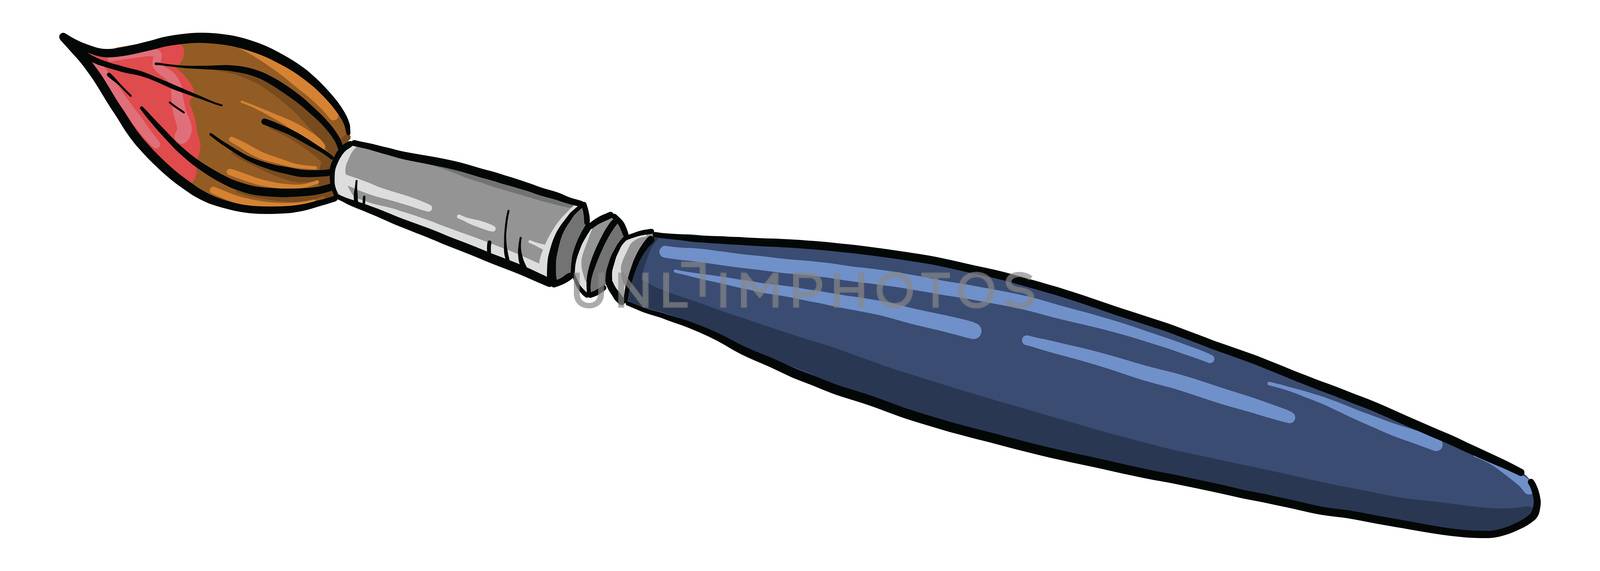 Blue brush , illustration, vector on white background